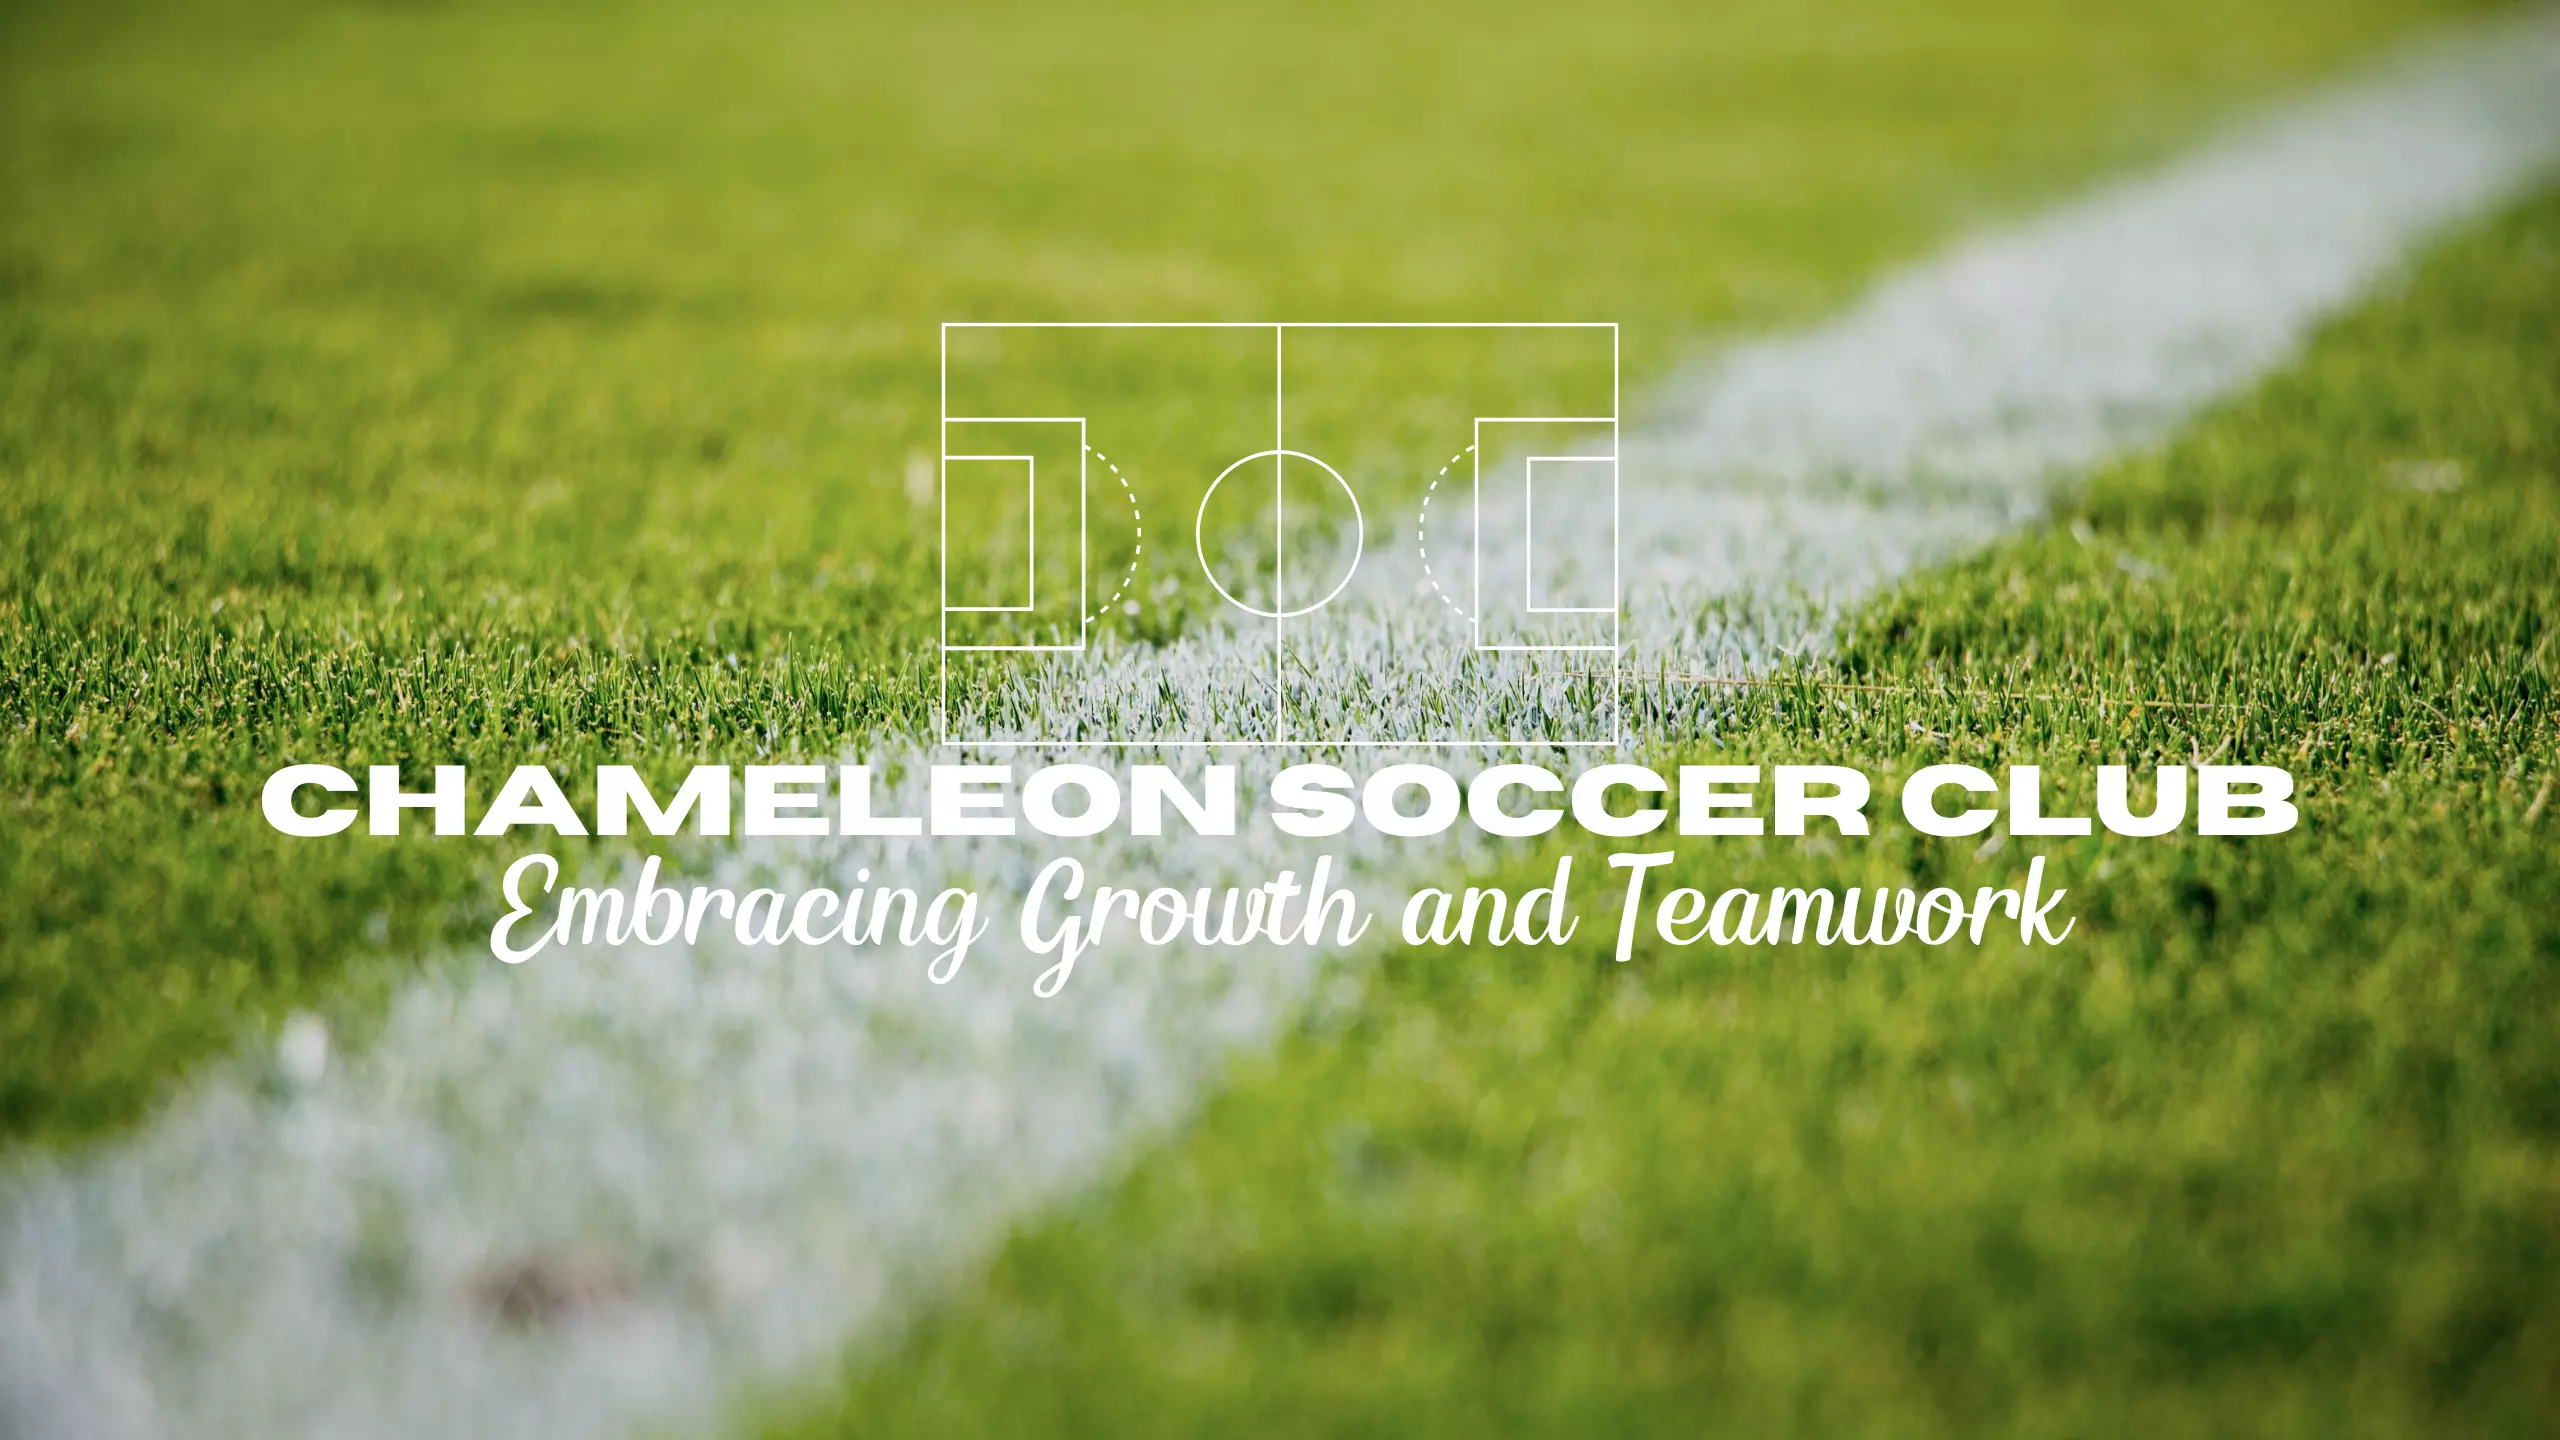 Chameleon Soccer Club